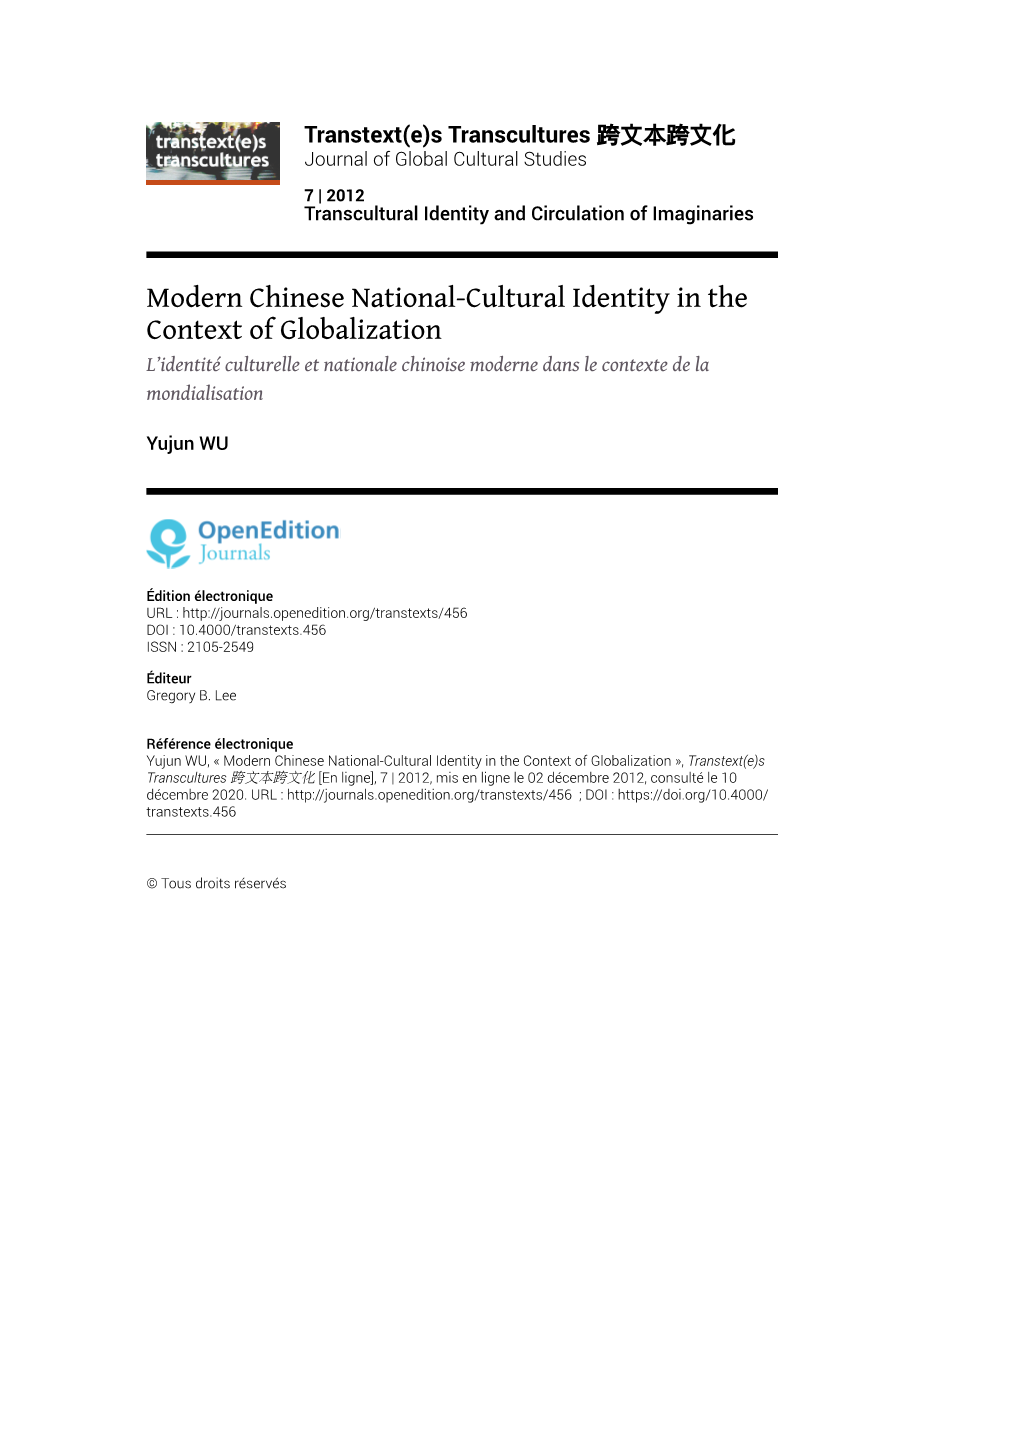 Modern Chinese National-Cultural Identity in the Context of Globalization L’Identité Culturelle Et Nationale Chinoise Moderne Dans Le Contexte De La Mondialisation